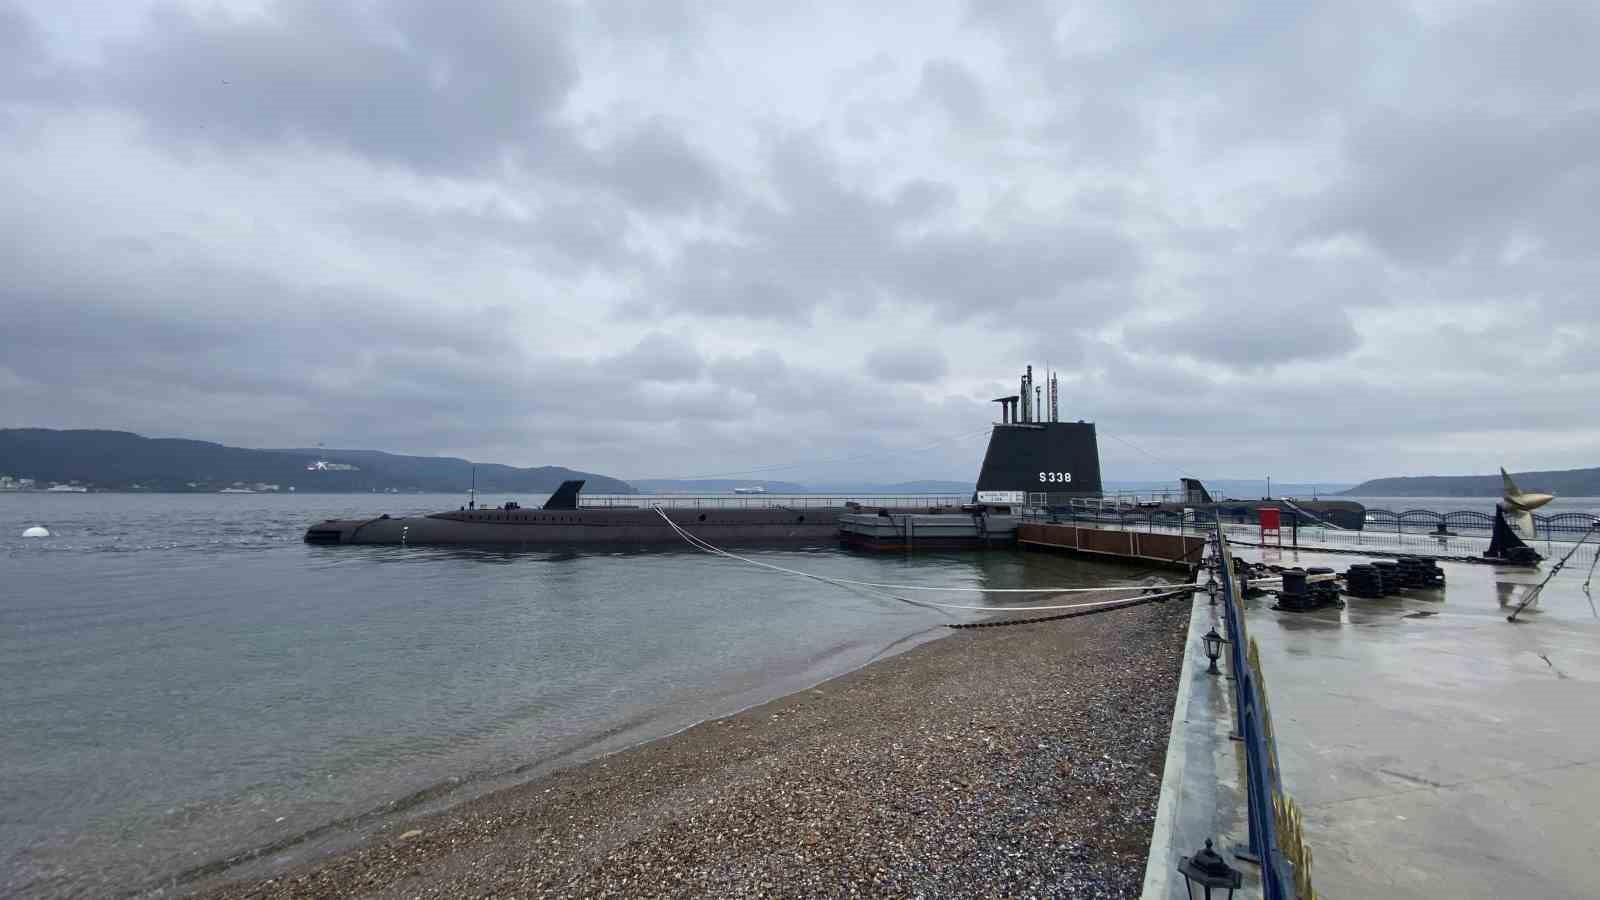 ‘TCG ULUÇALİREİS’ Türkiye’nin ilk denizaltı müzesi olarak 18 Mart’ta ziyarete açılacak
